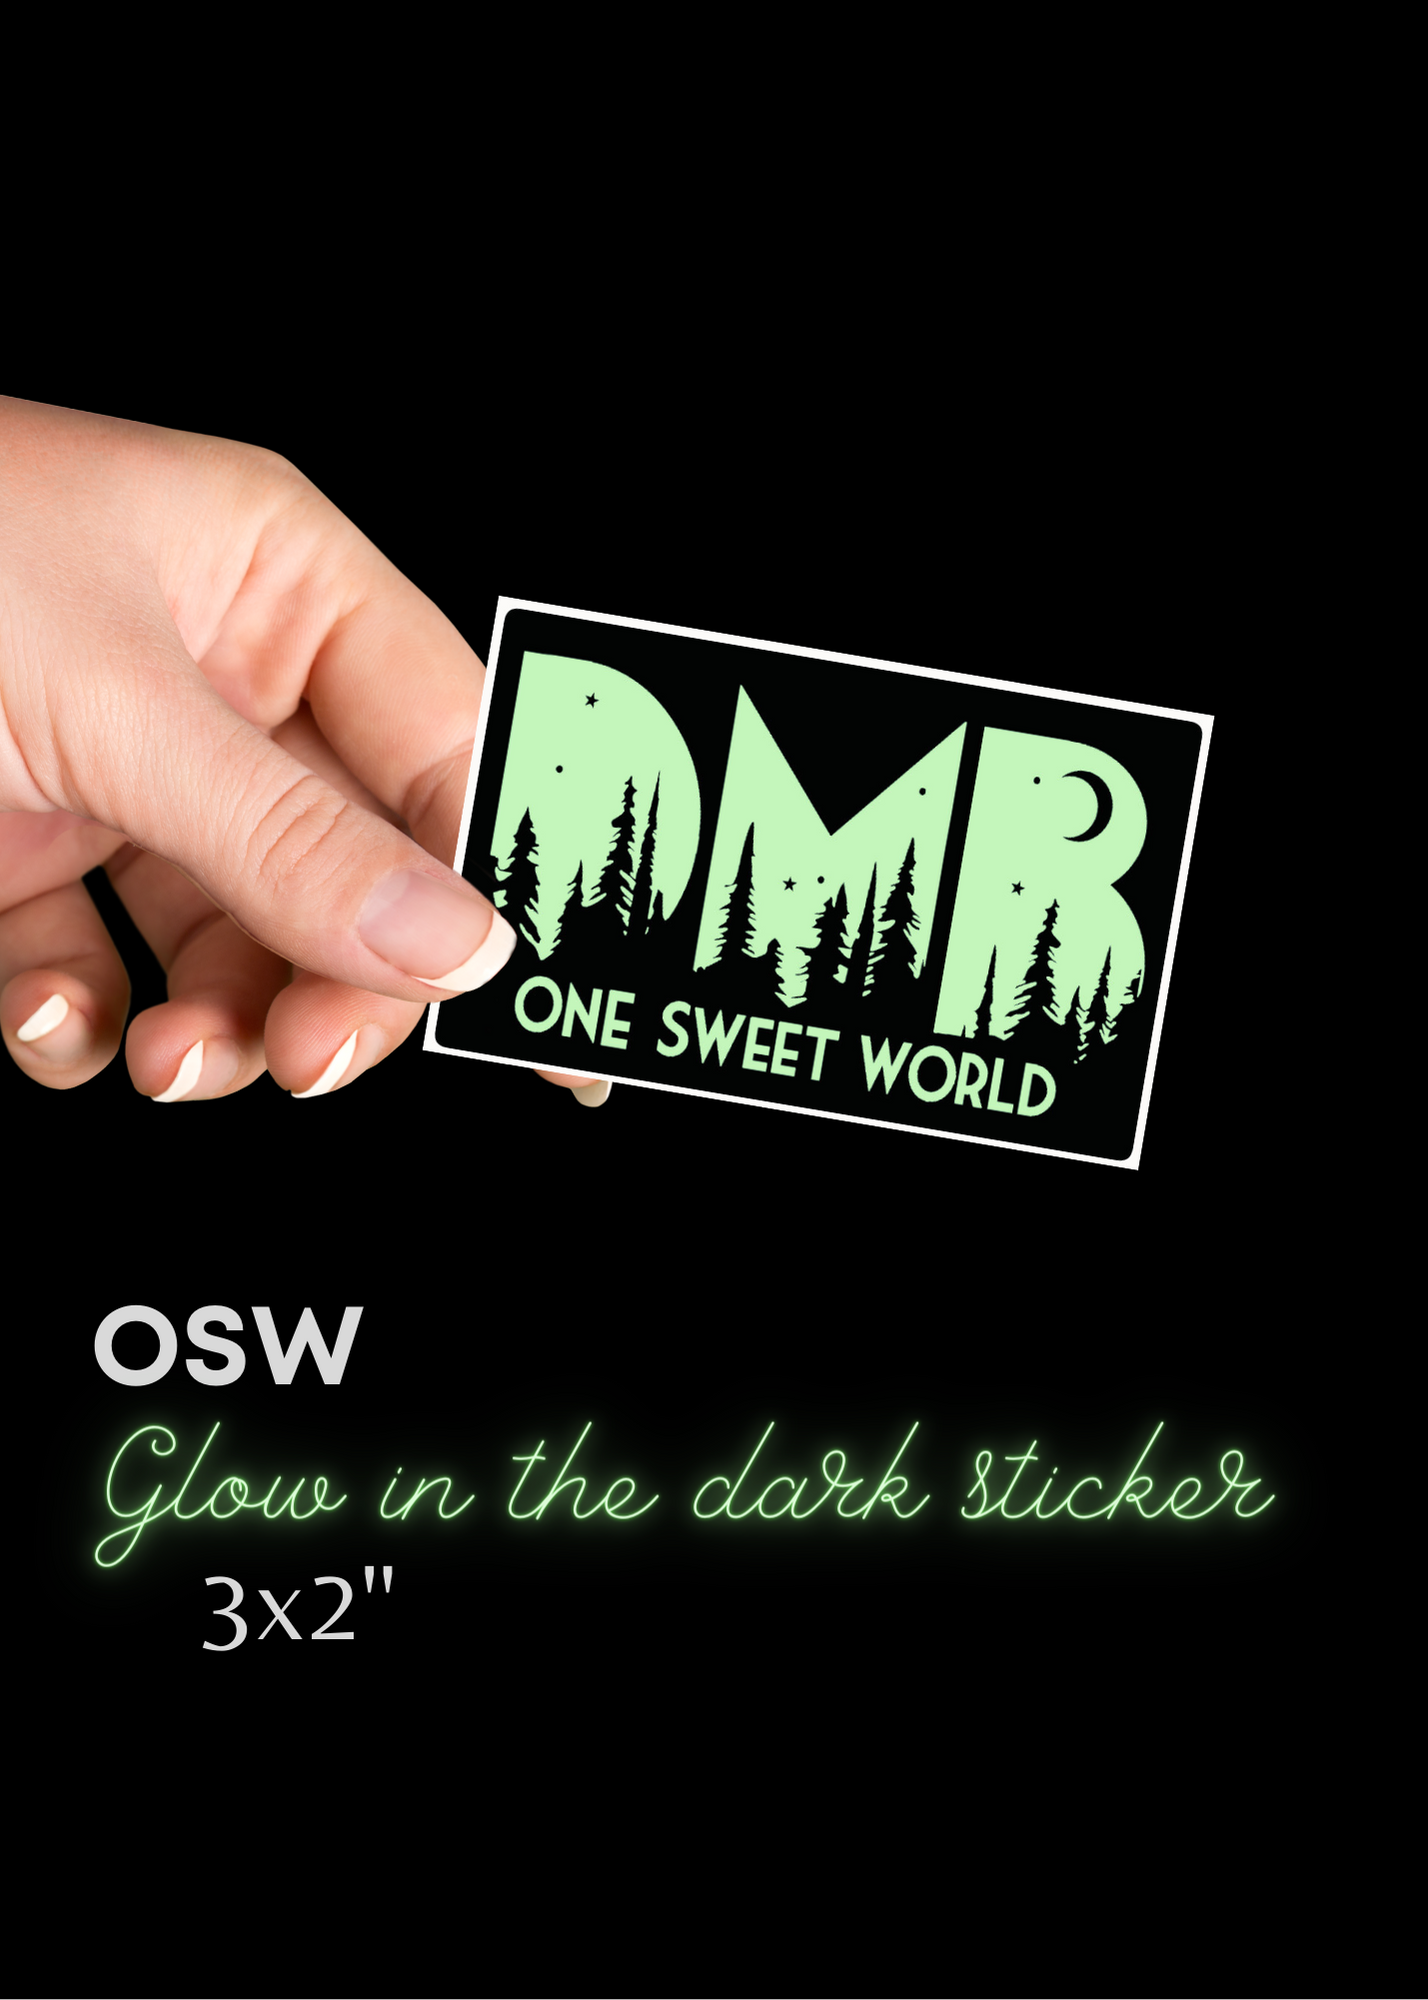 sticker - DMB - osw - one sweet world - glow in the dark - 2"x3"